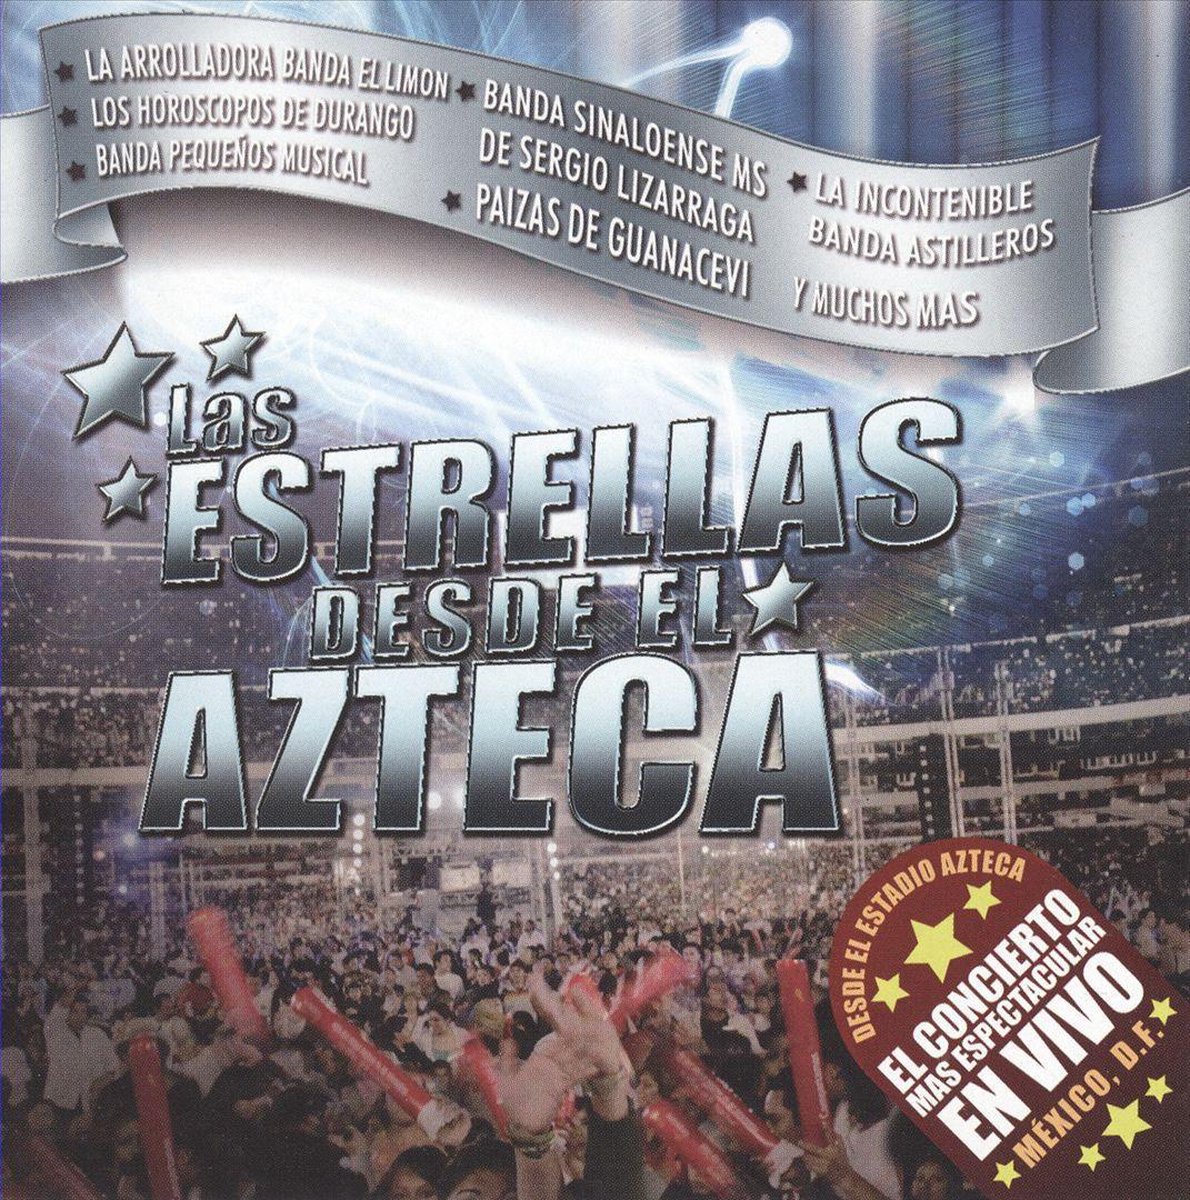 Estrellas Desde el Azteca - various artists